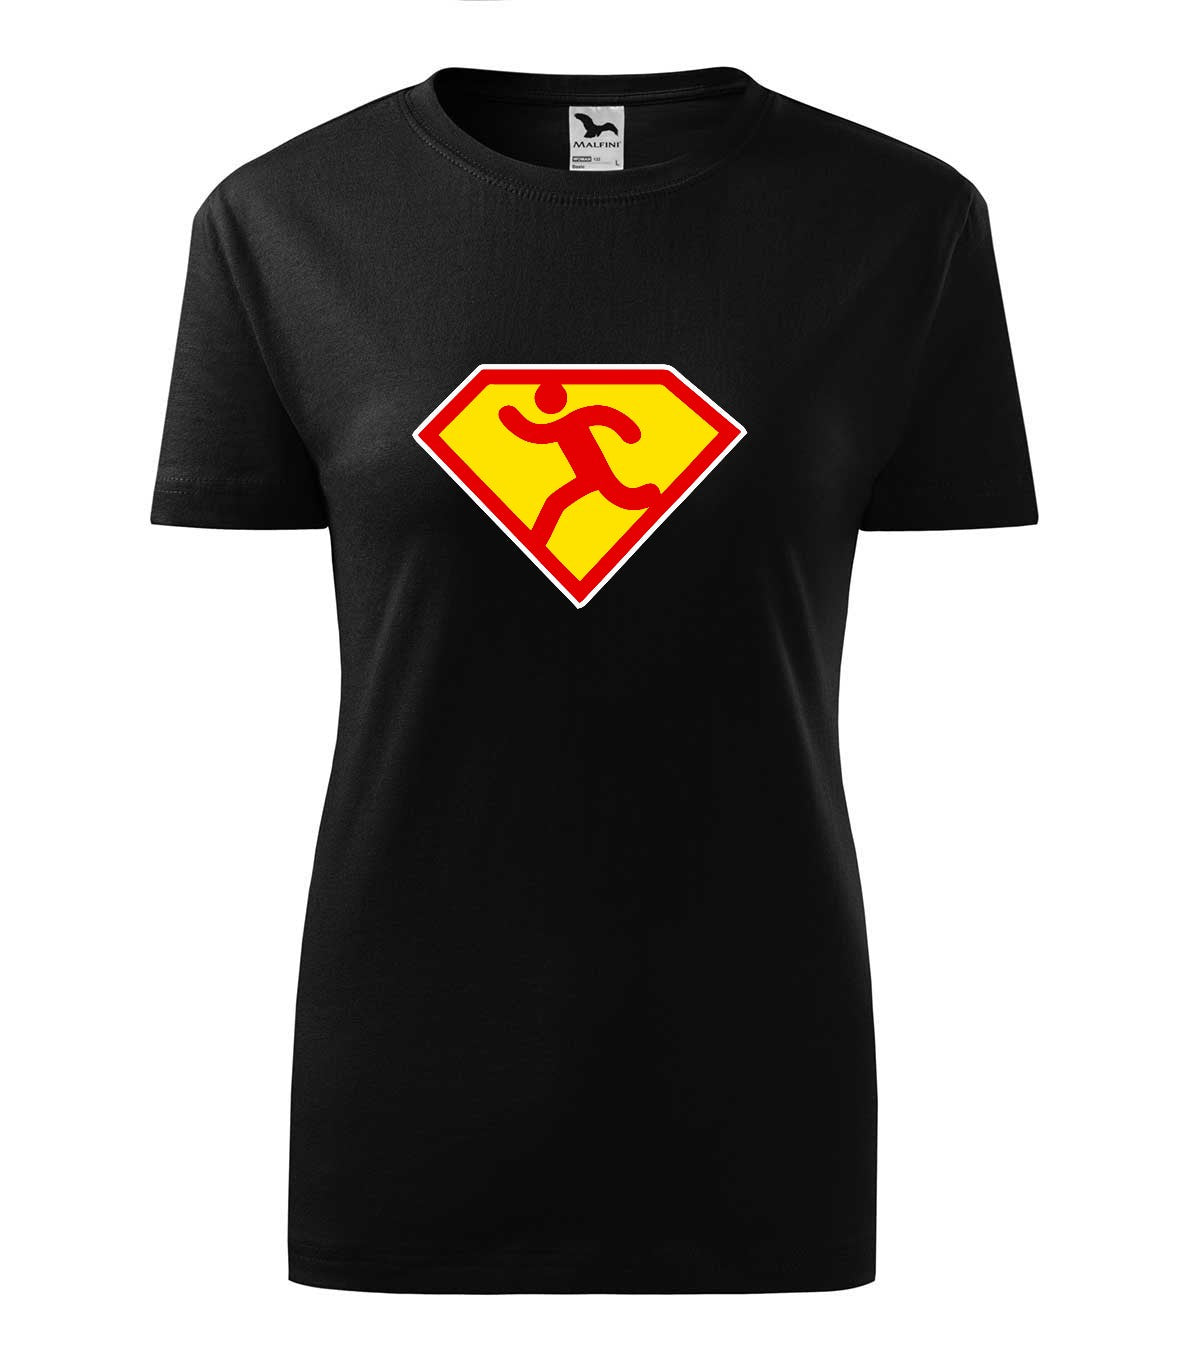 Superrunner női póló